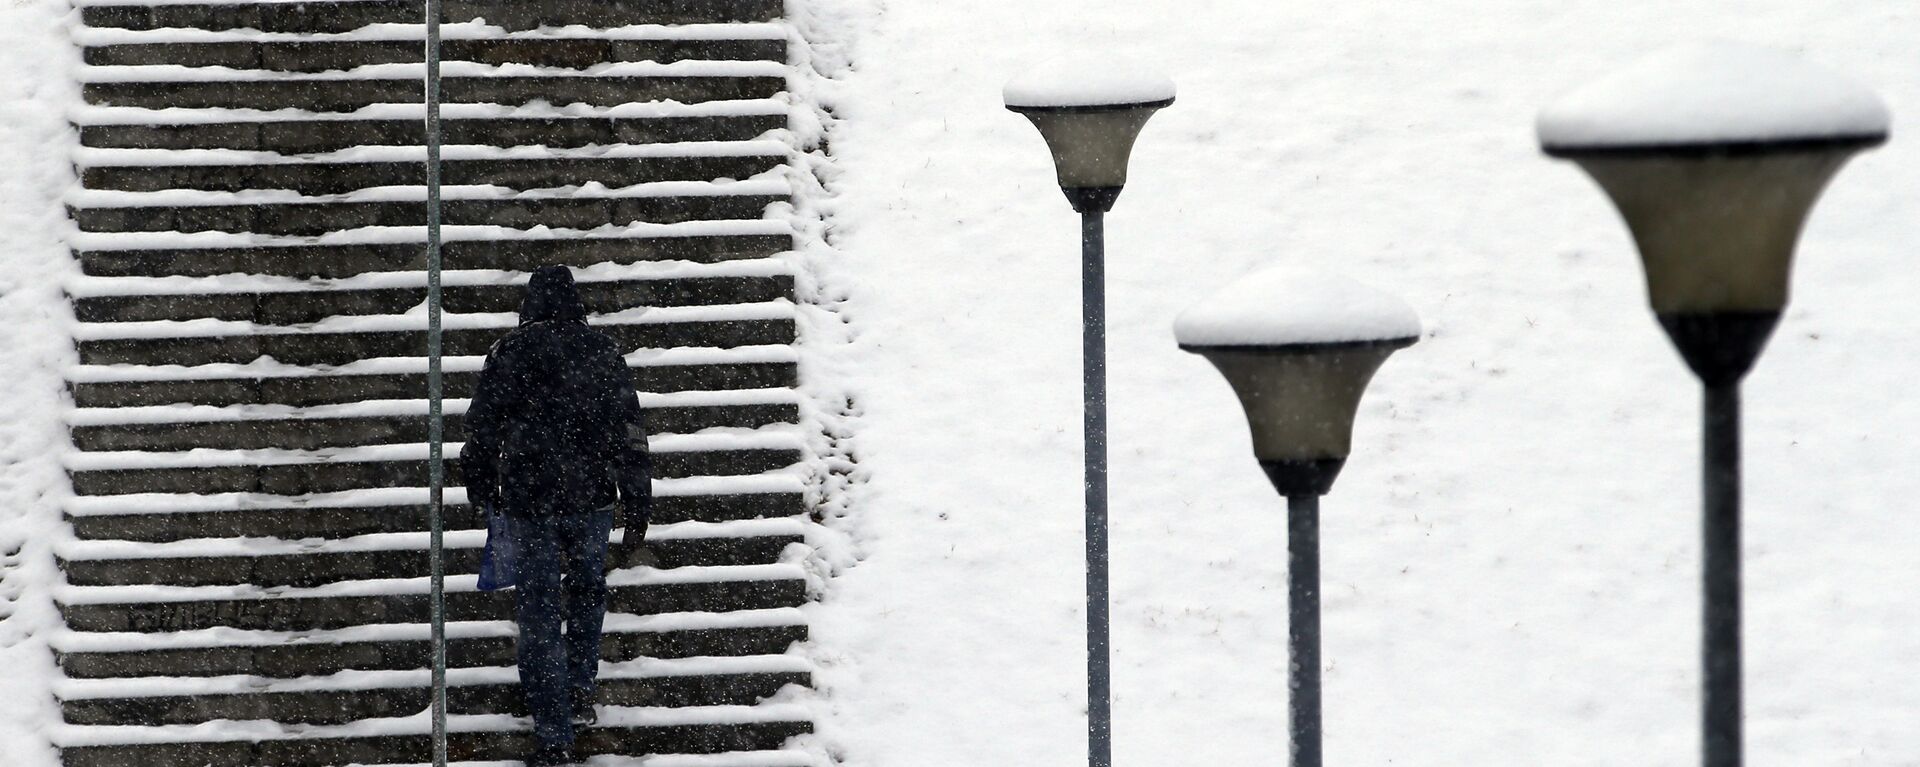 Човек се пење уз степенице у парку покривеном снегом у Београду - Sputnik Србија, 1920, 08.11.2021